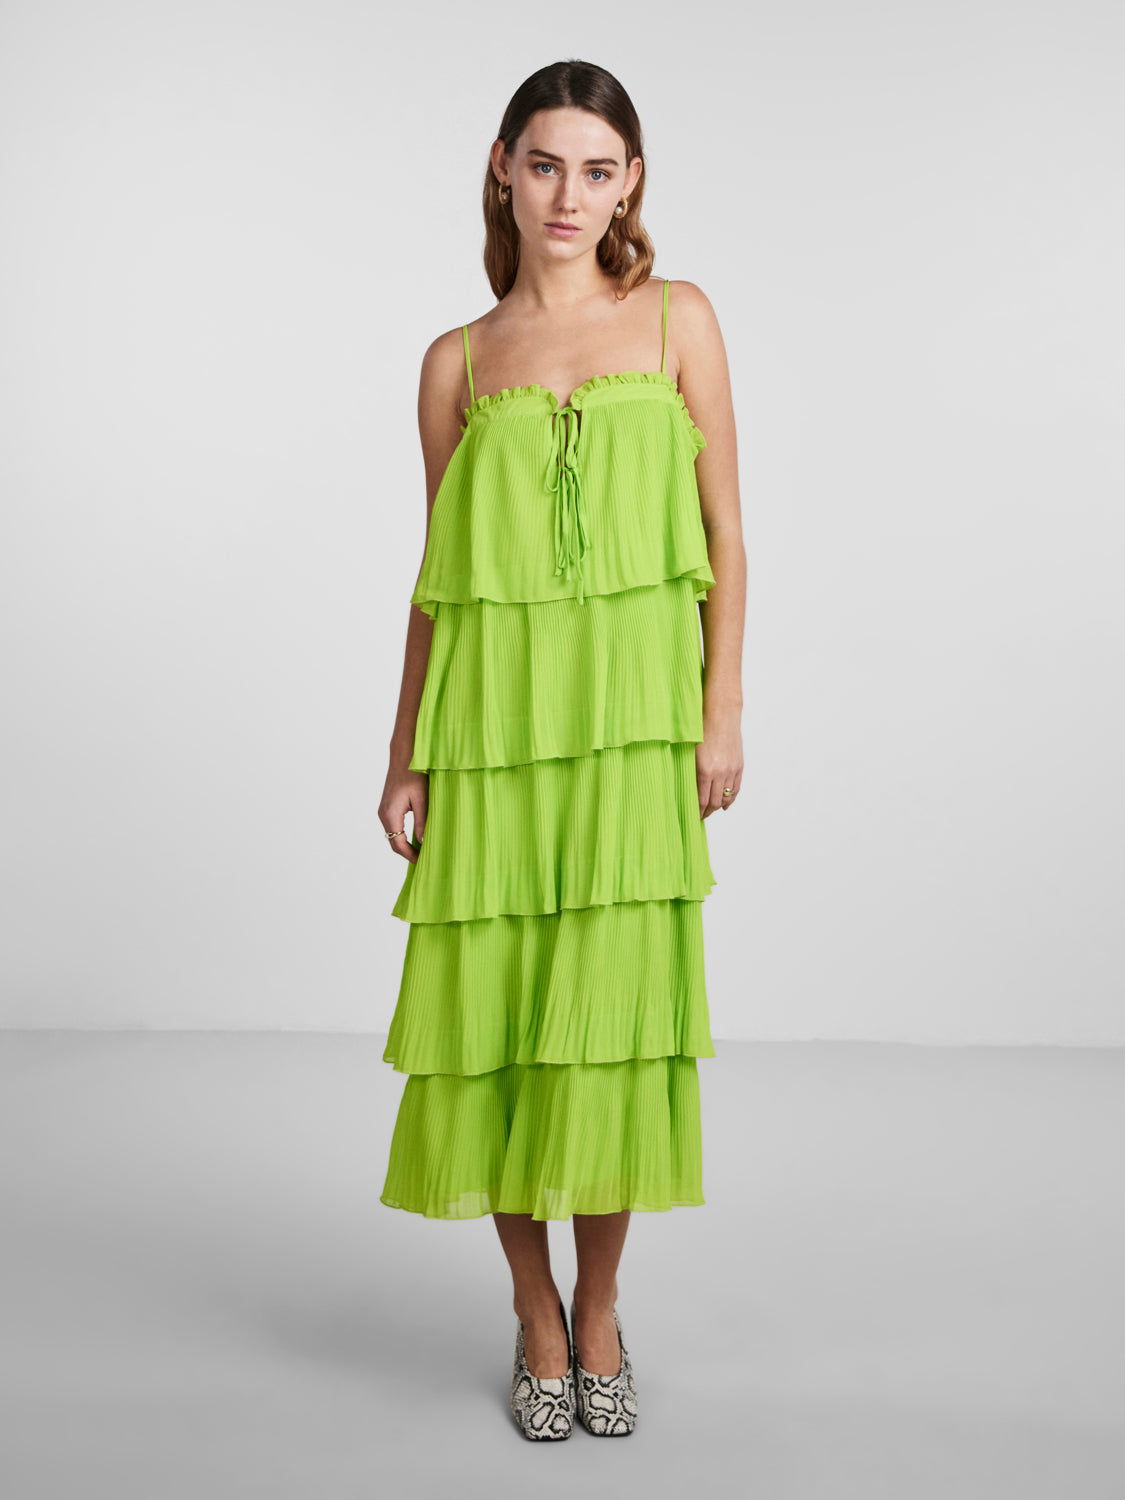 YASPIMO Dress Lime Green – BESTSELLER Rømerhus